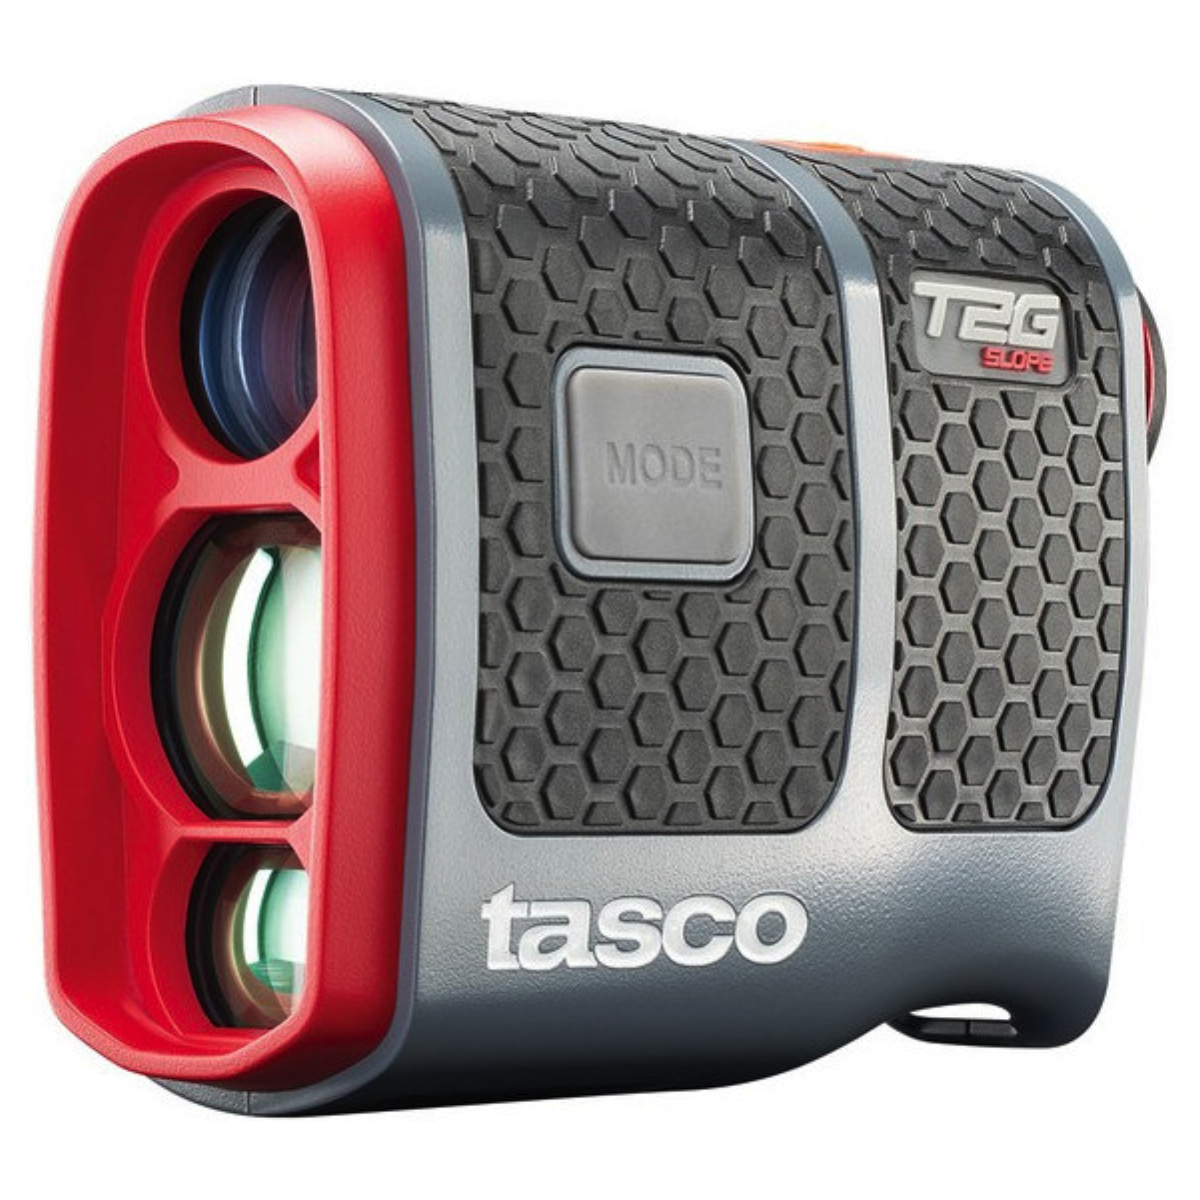 Tasco Laser T2G Tour Slope Black/Red